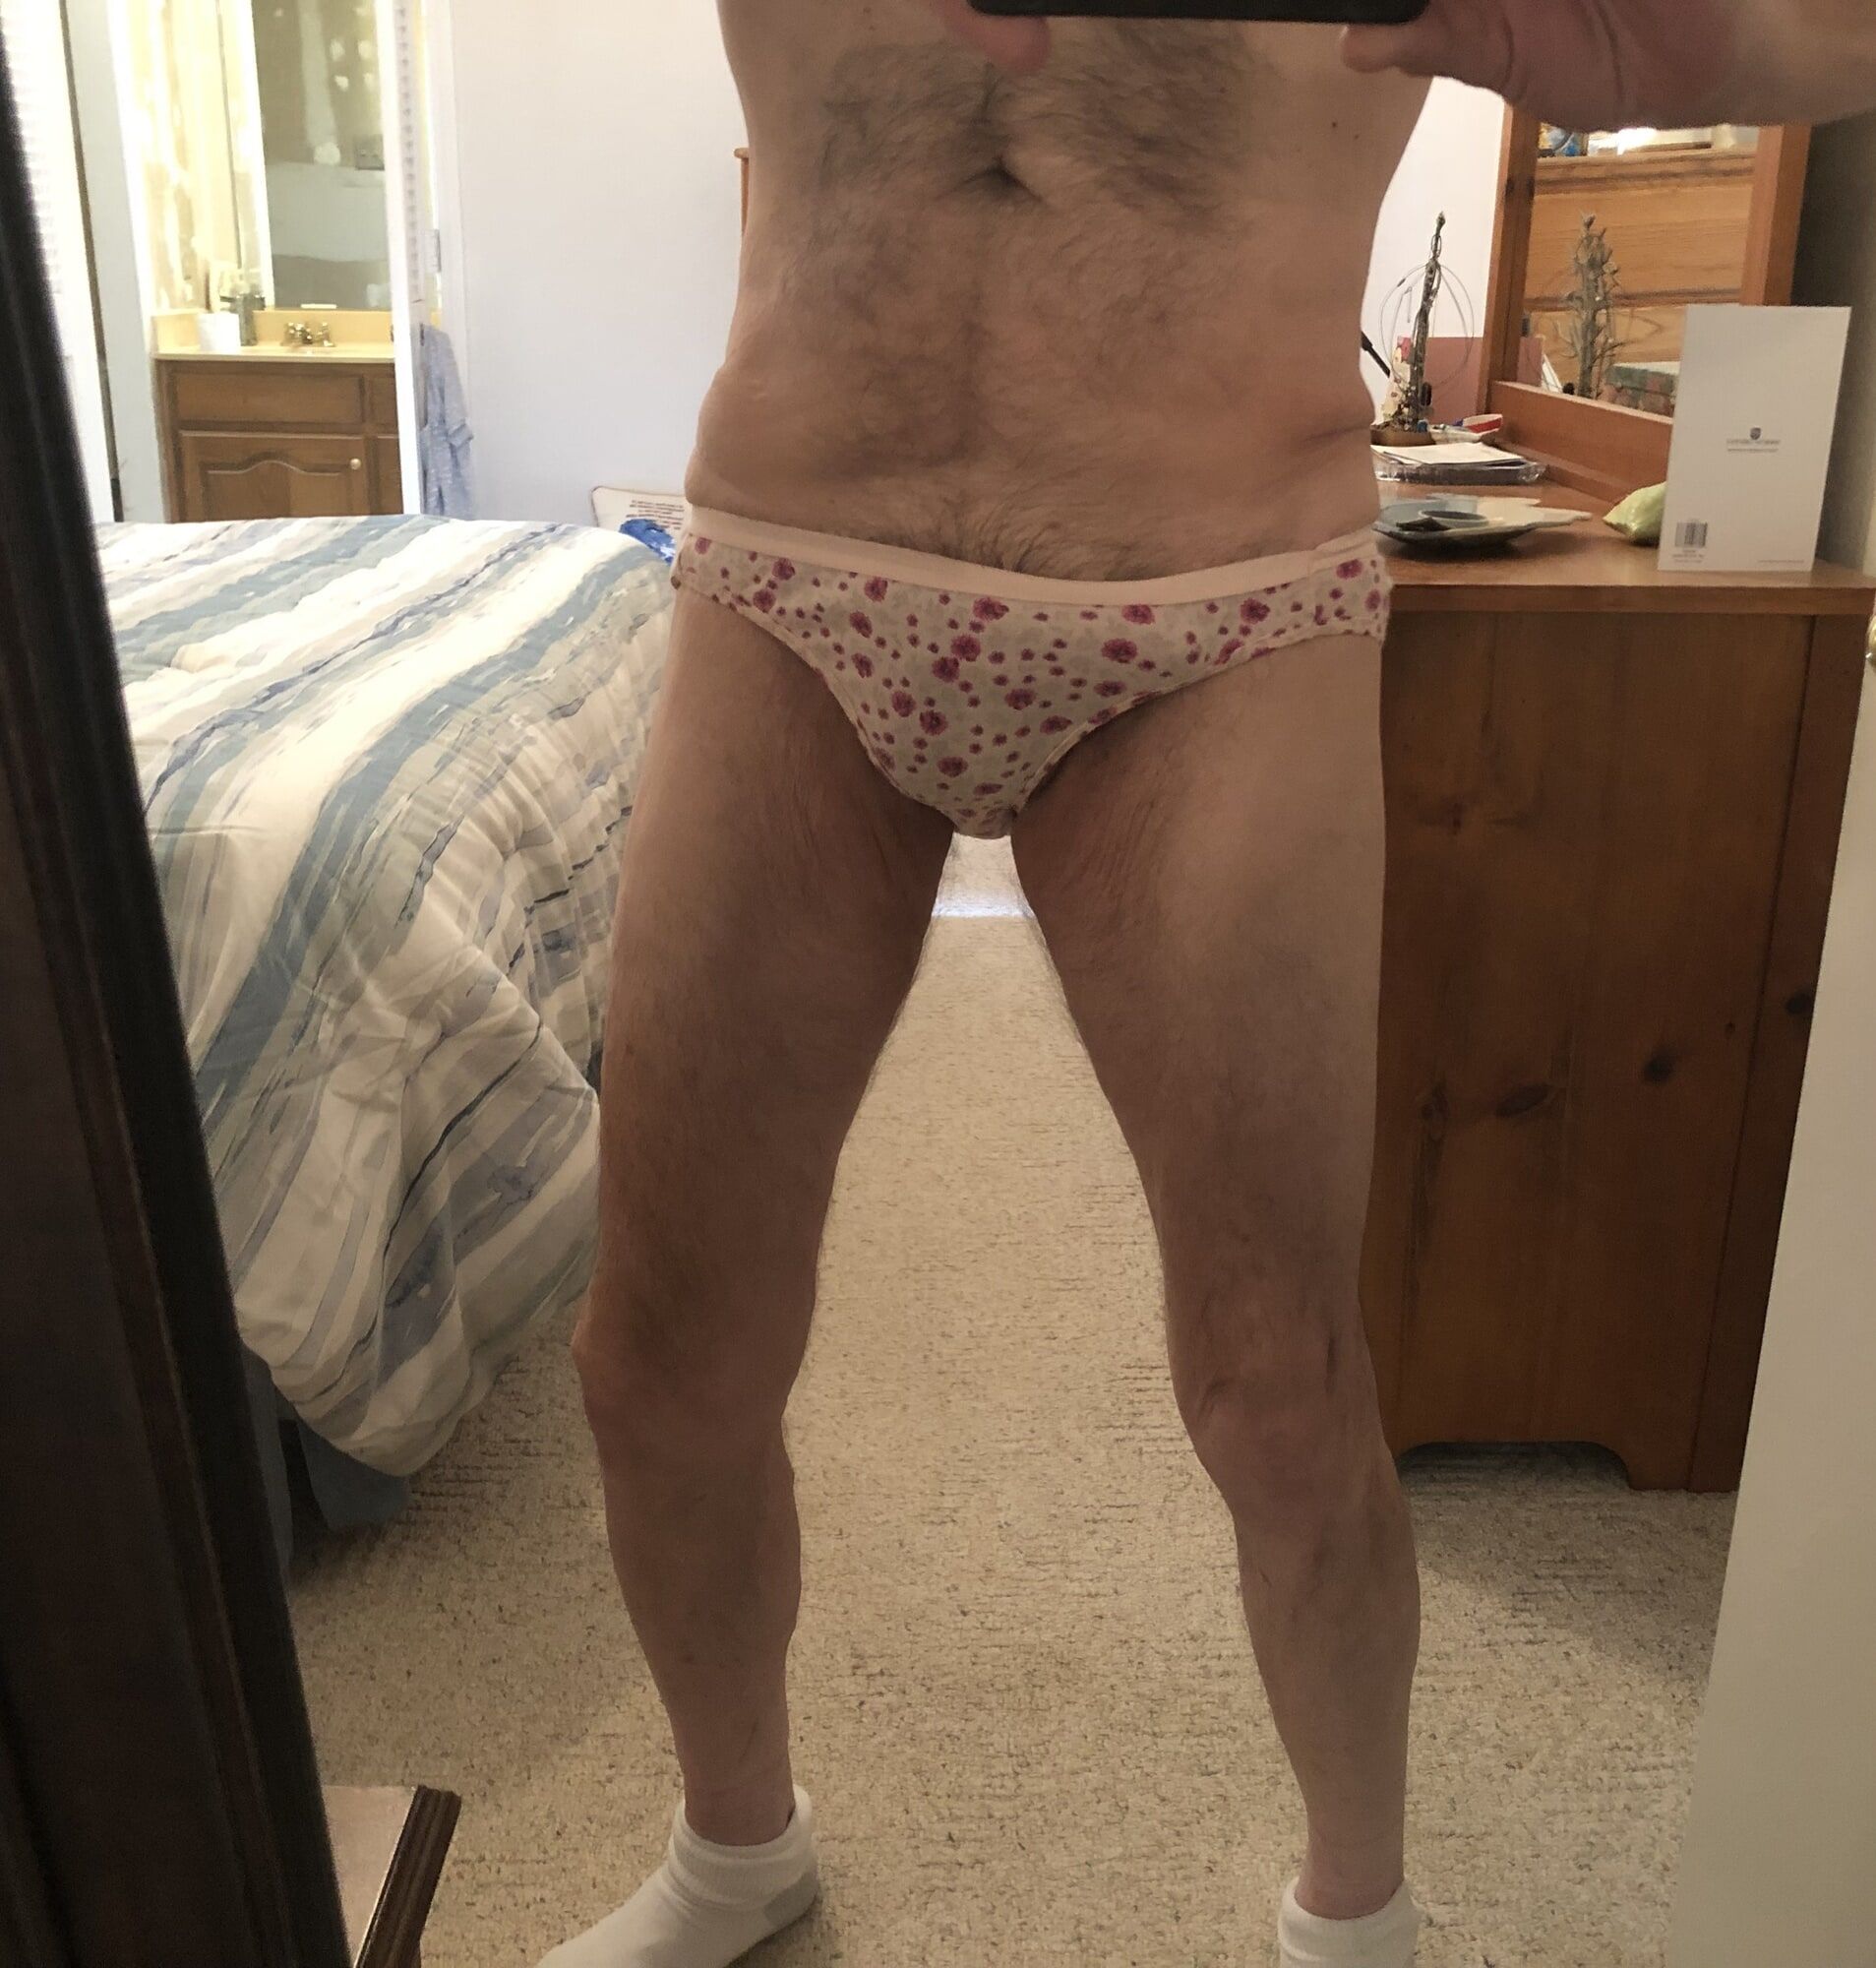 Me wearing my wife’s panties 